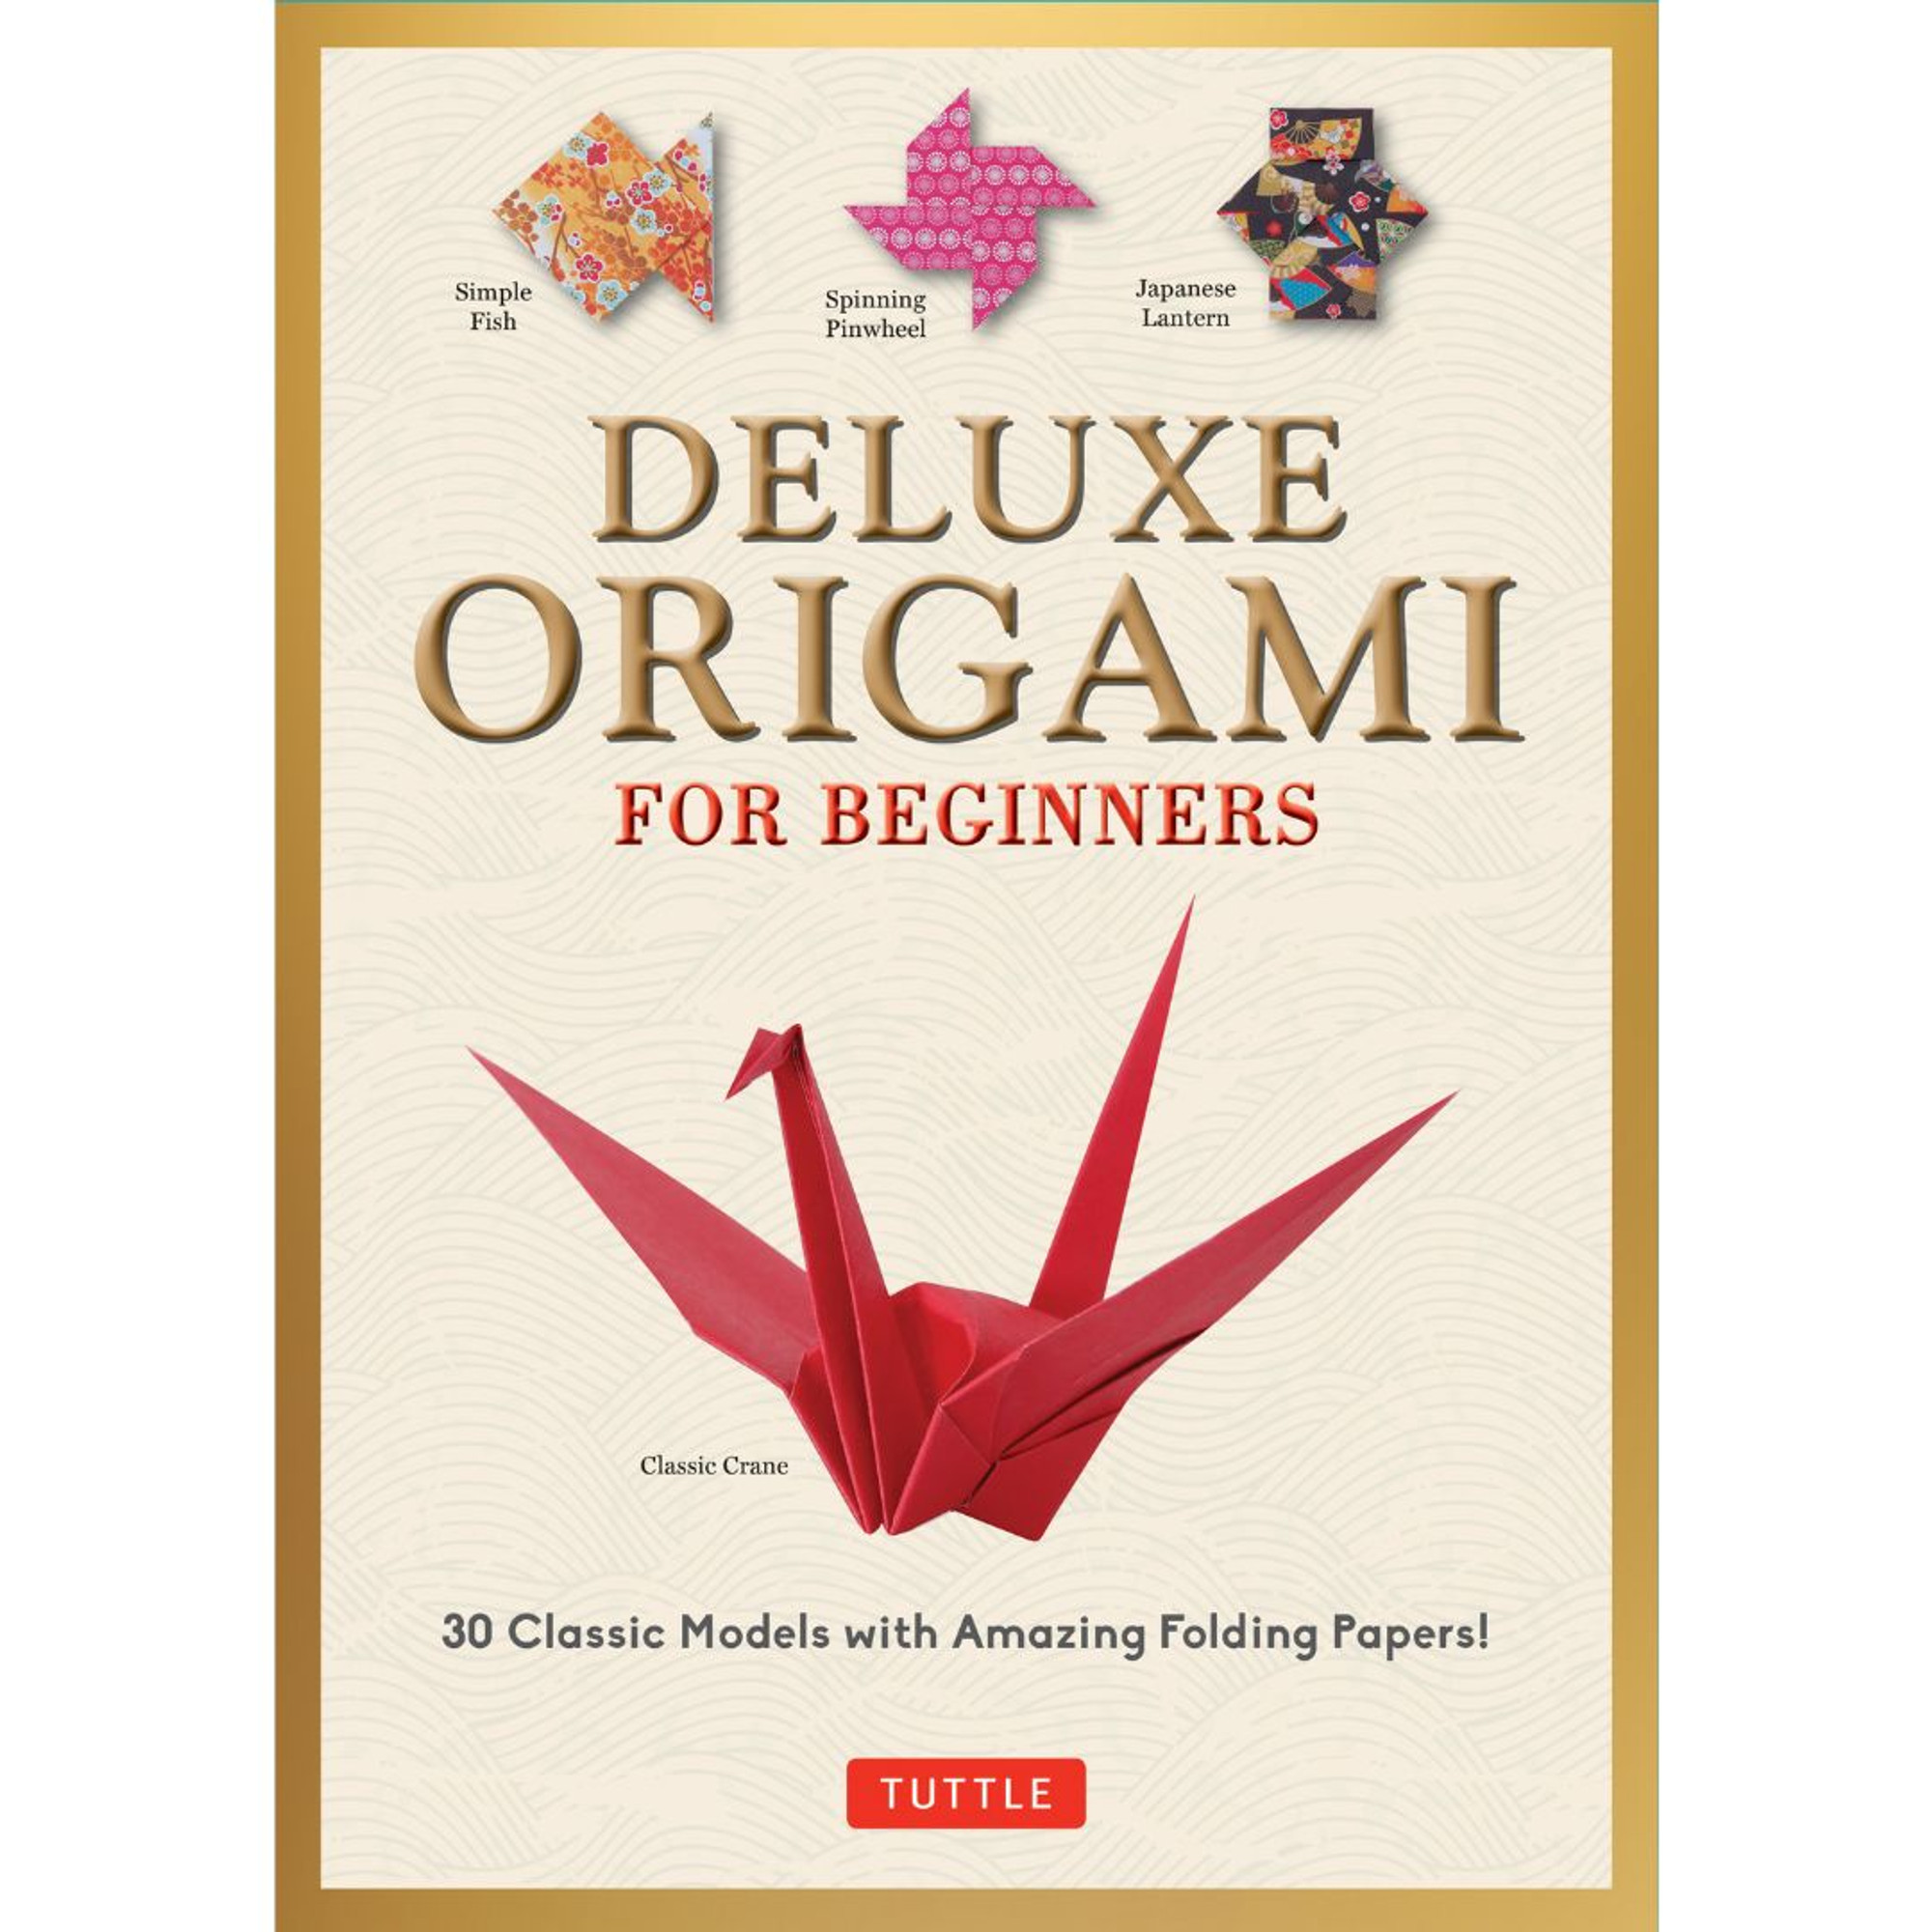 Origami Products - Tuttle Publishing